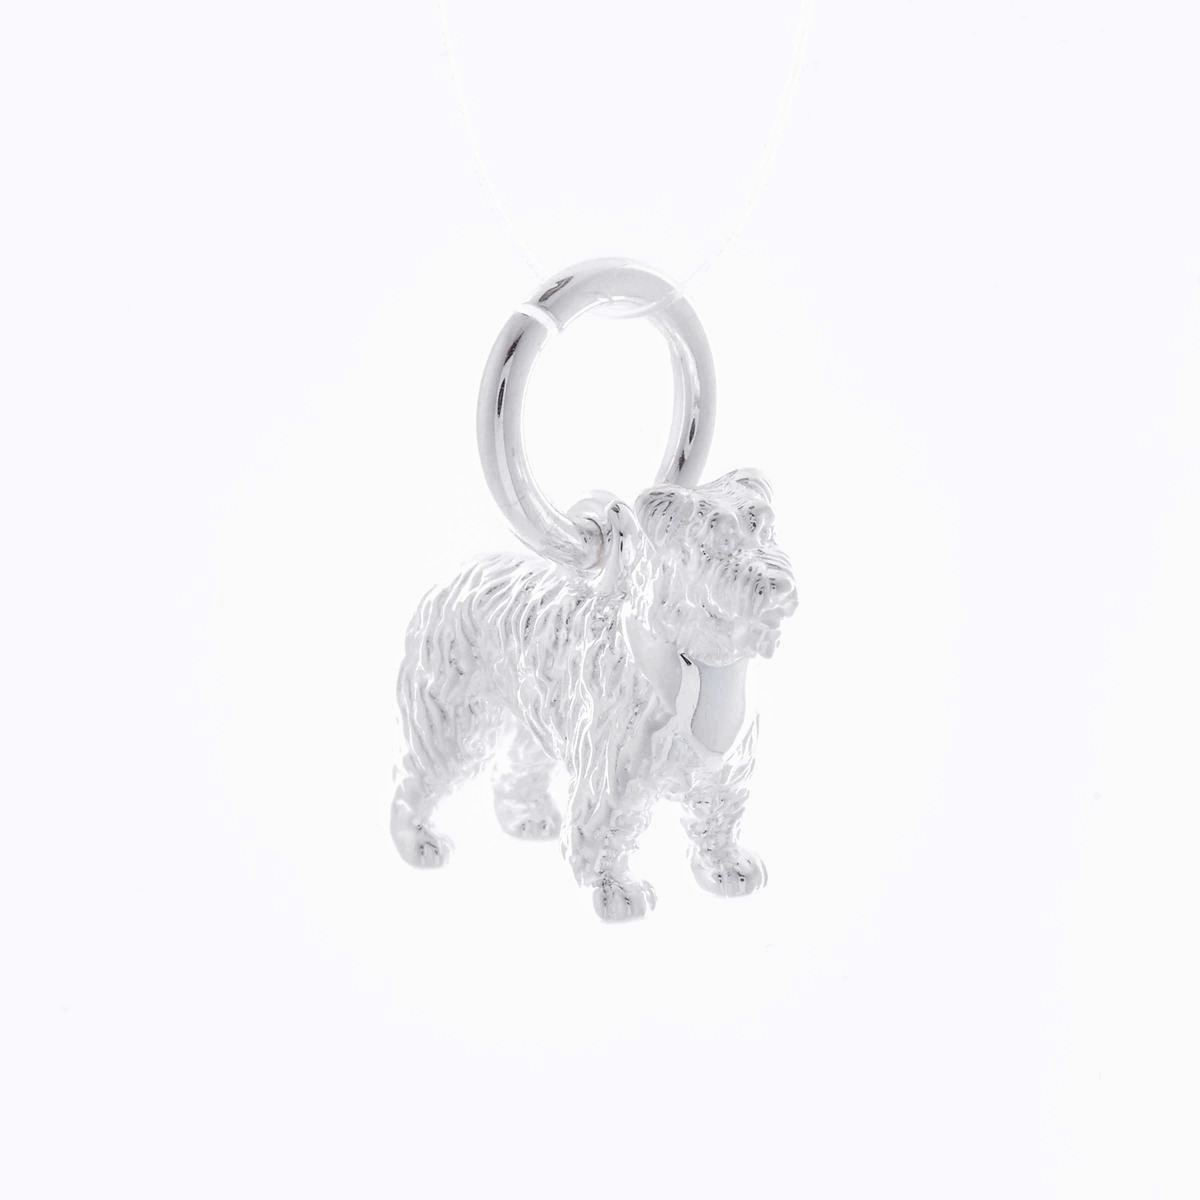 miniature schnauzer silver dog charm scarlett jewellery